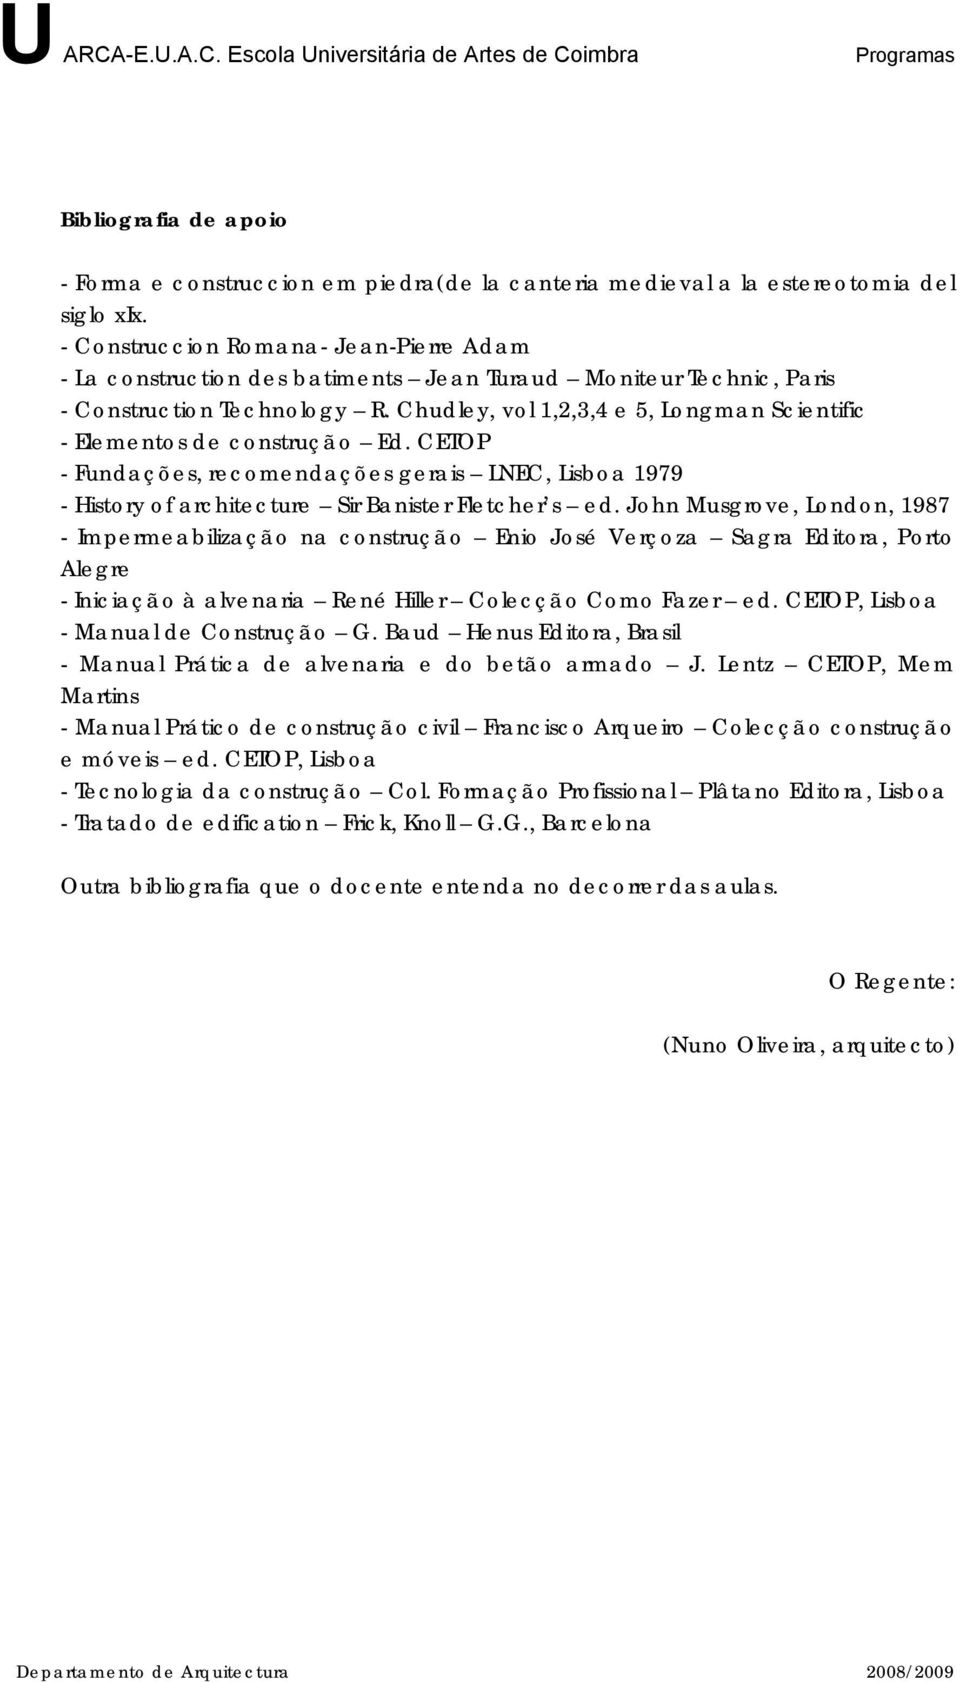 Chudley, vol 1,2,3,4 e 5, Longman Scientific - Elementos de construção Ed. CETOP - Fundações, recomendações gerais LNEC, Lisboa 1979 - History of architecture Sir Banister Fletcher s ed.